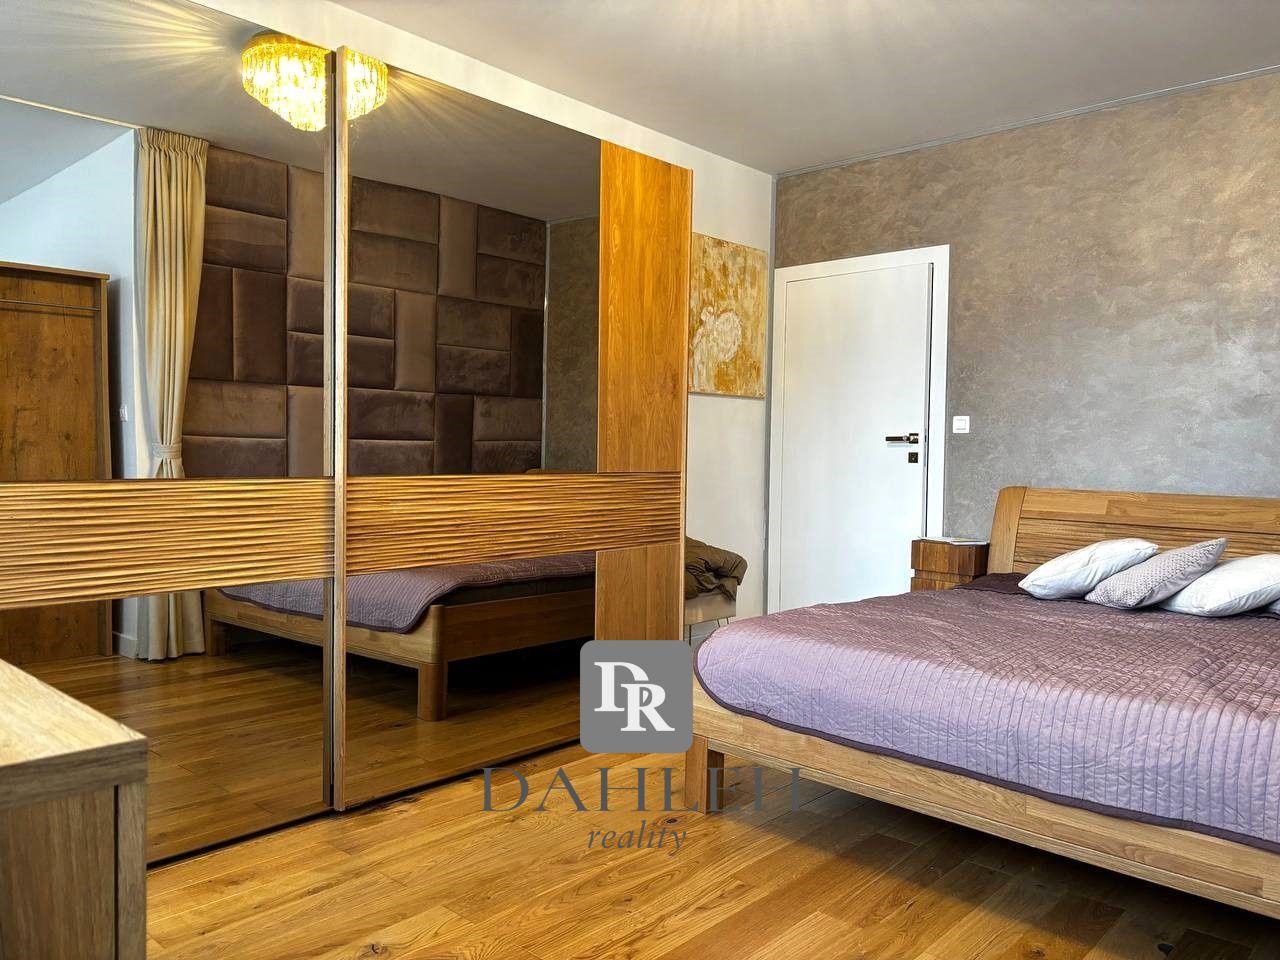 Na prenájom luxusný 2,5 - izbový byt v novostavbe, na ul. Urpínska, Petržalka.